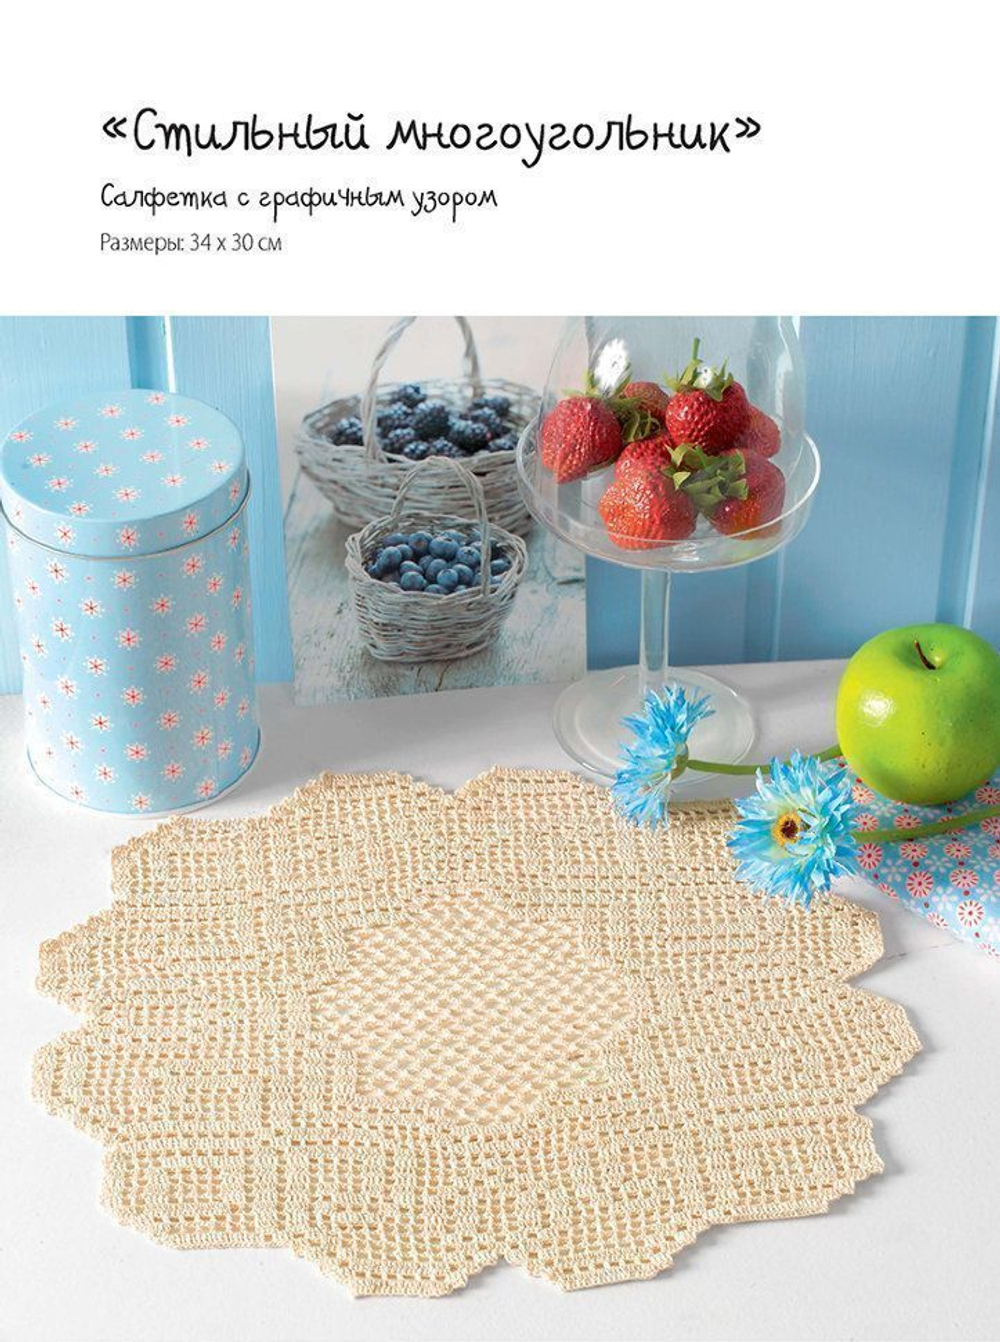 Скатерти в технике филейного вязания — купить книги на русском языке в DomKnigi в Европе